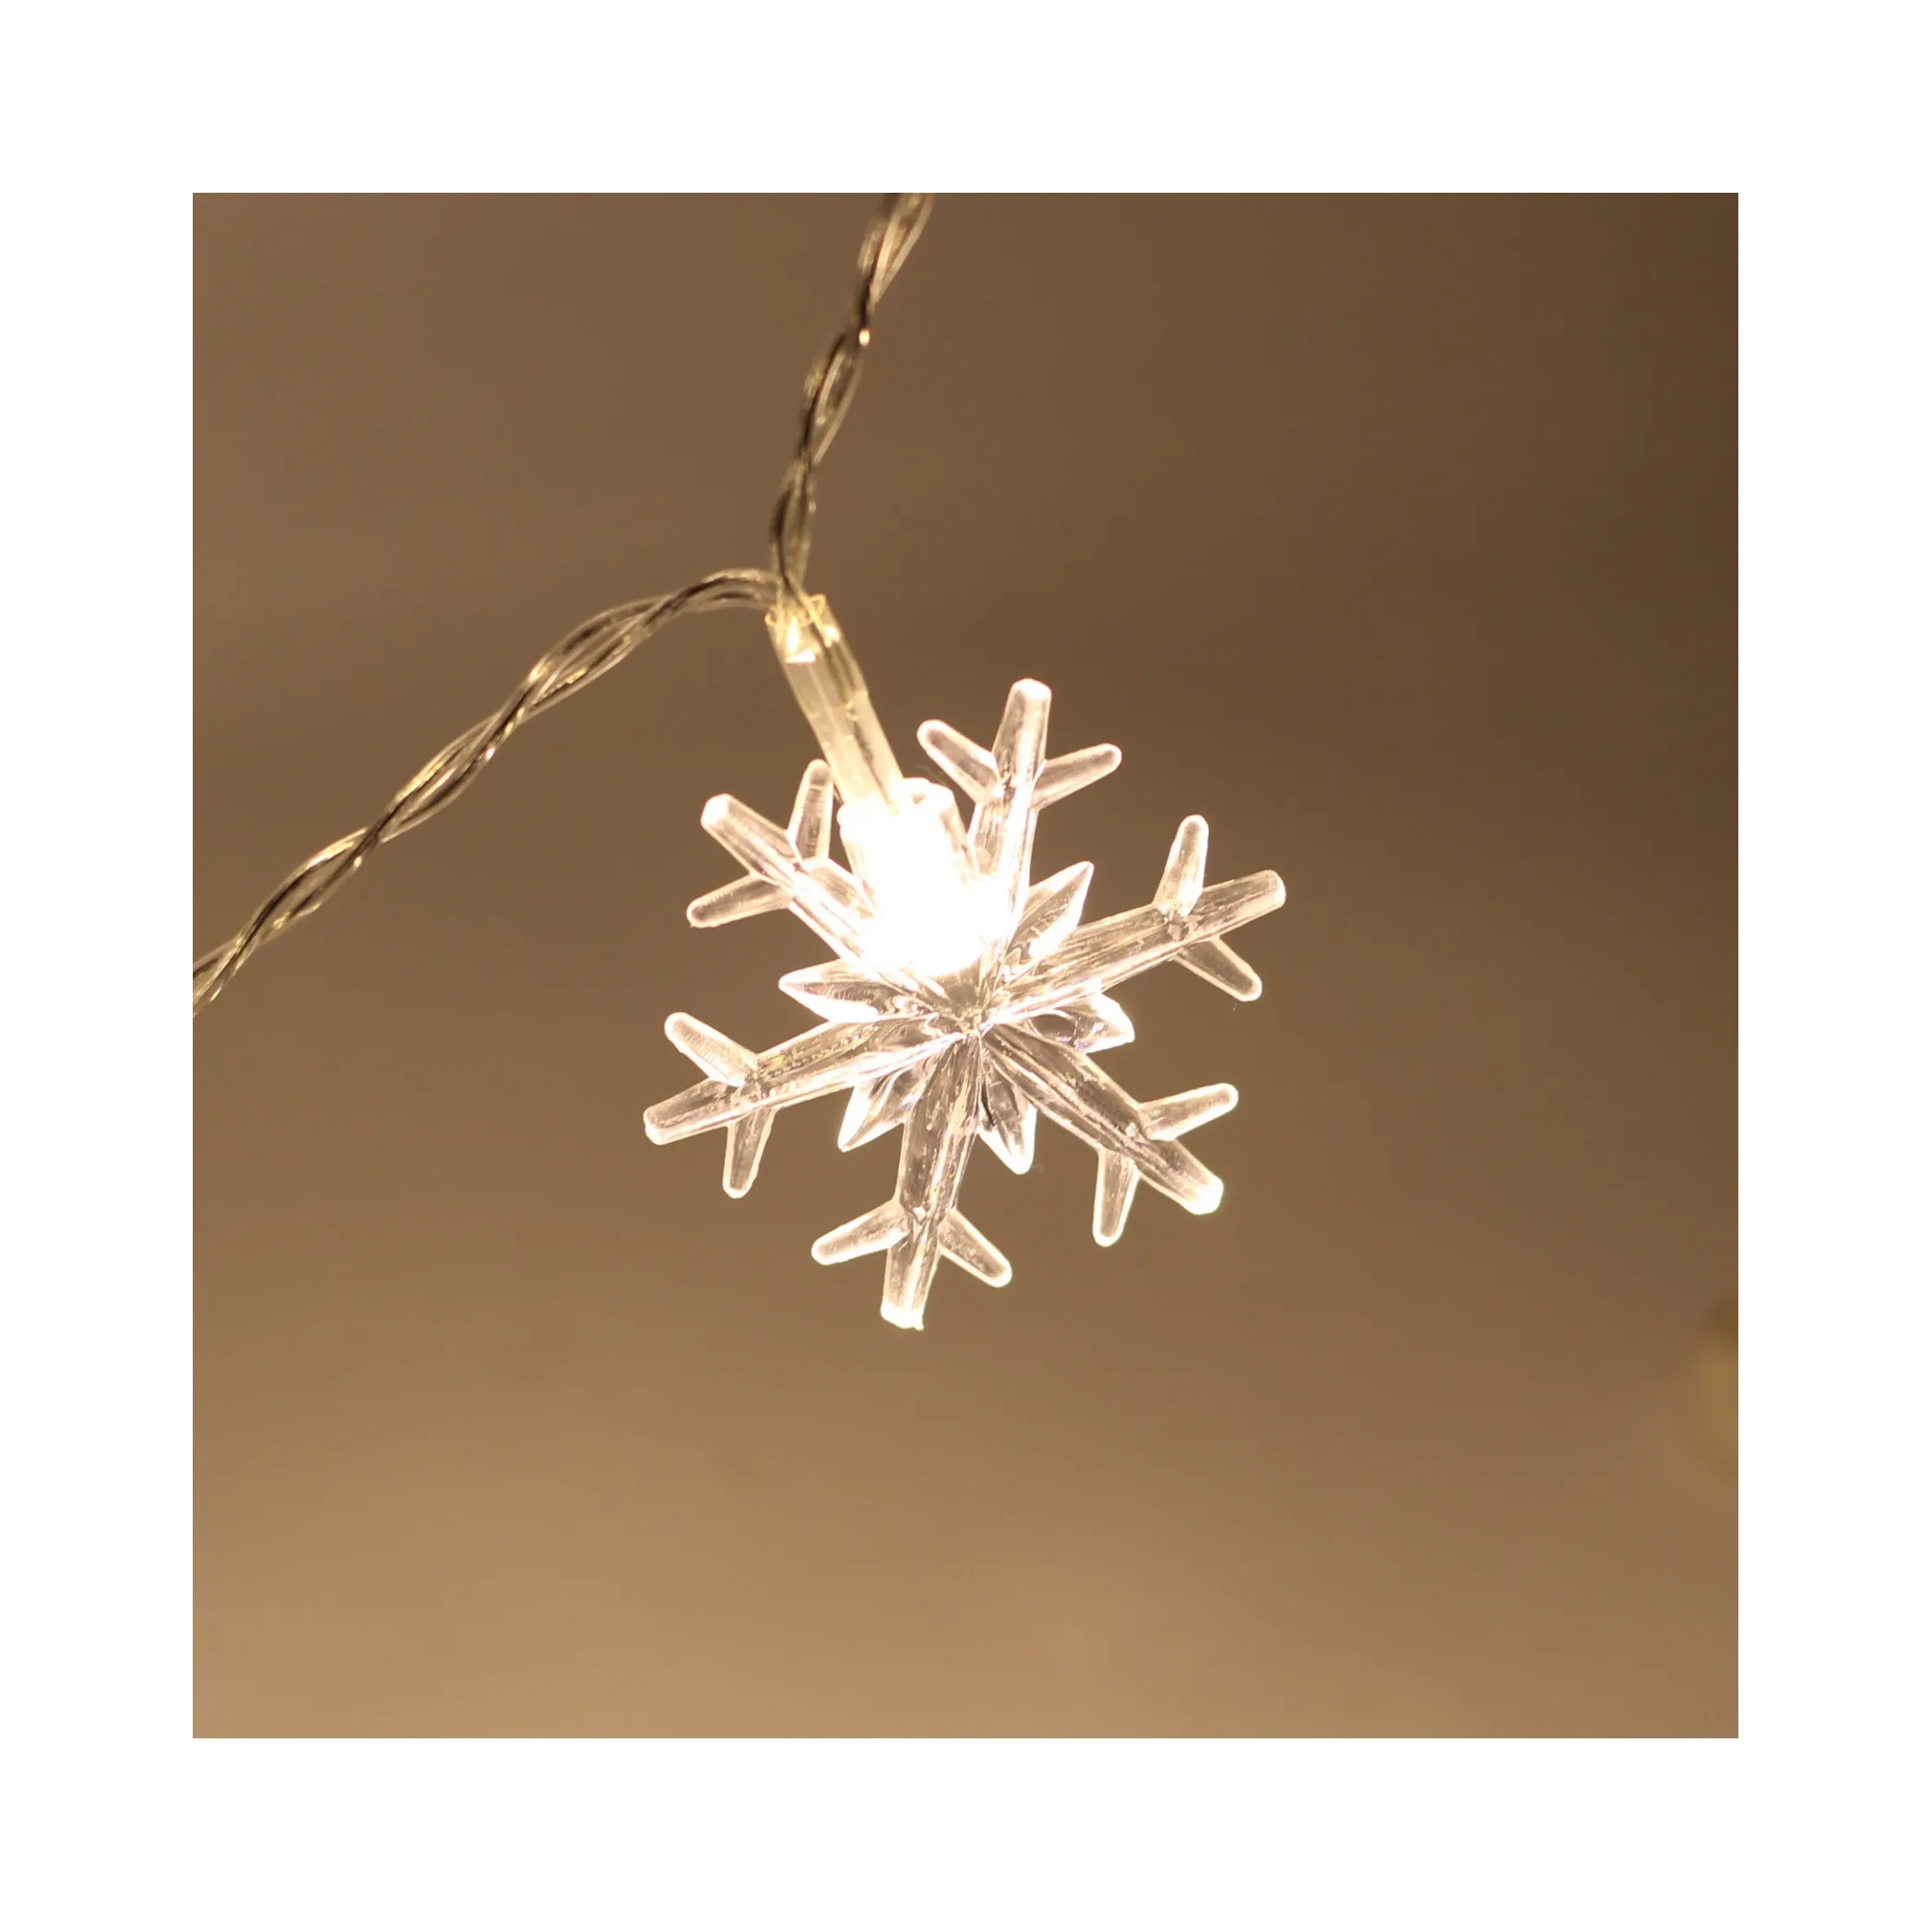 Fábrica interior barato Navidad estrella copo de nieve Led luz Sting Hada luces de Navidad para el hogar vacaciones decoración adornos de iluminación